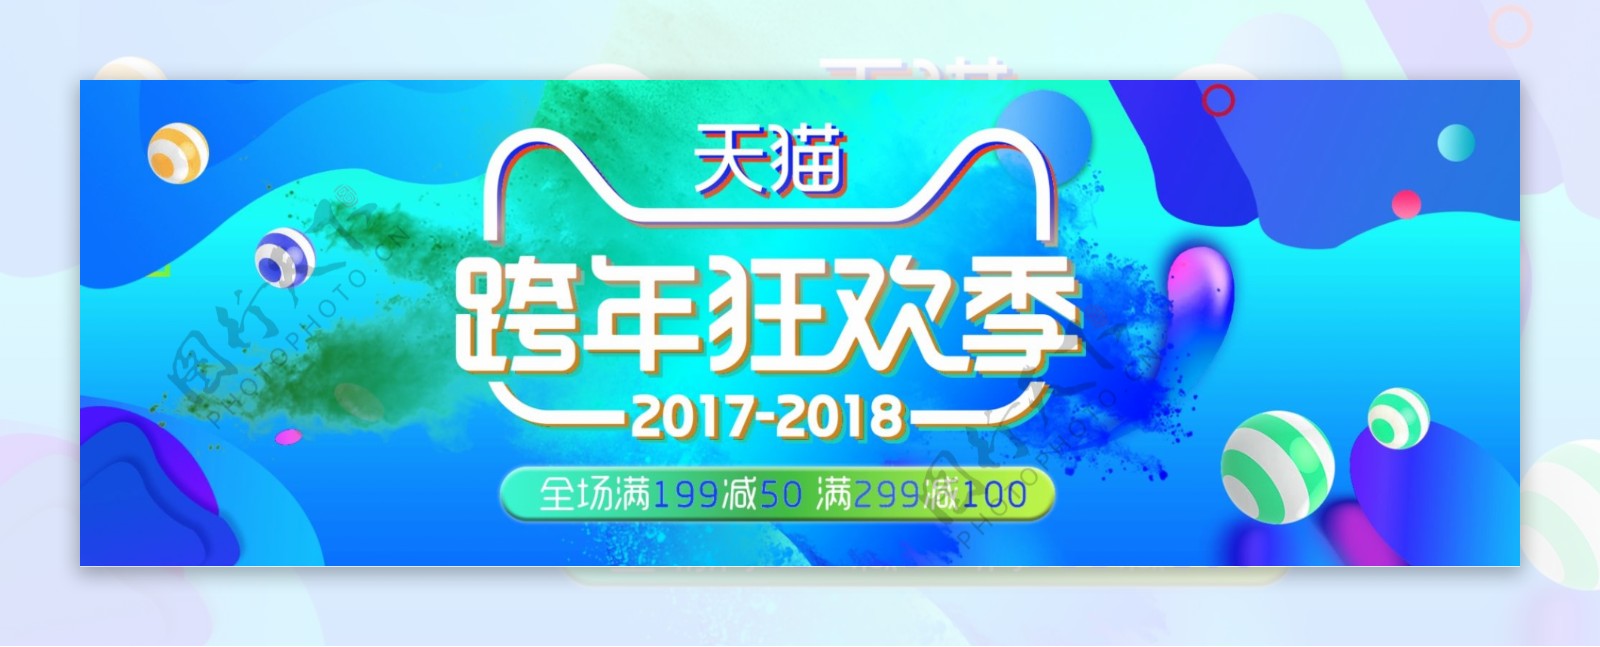 橙色炫酷跨年狂欢季电商banner